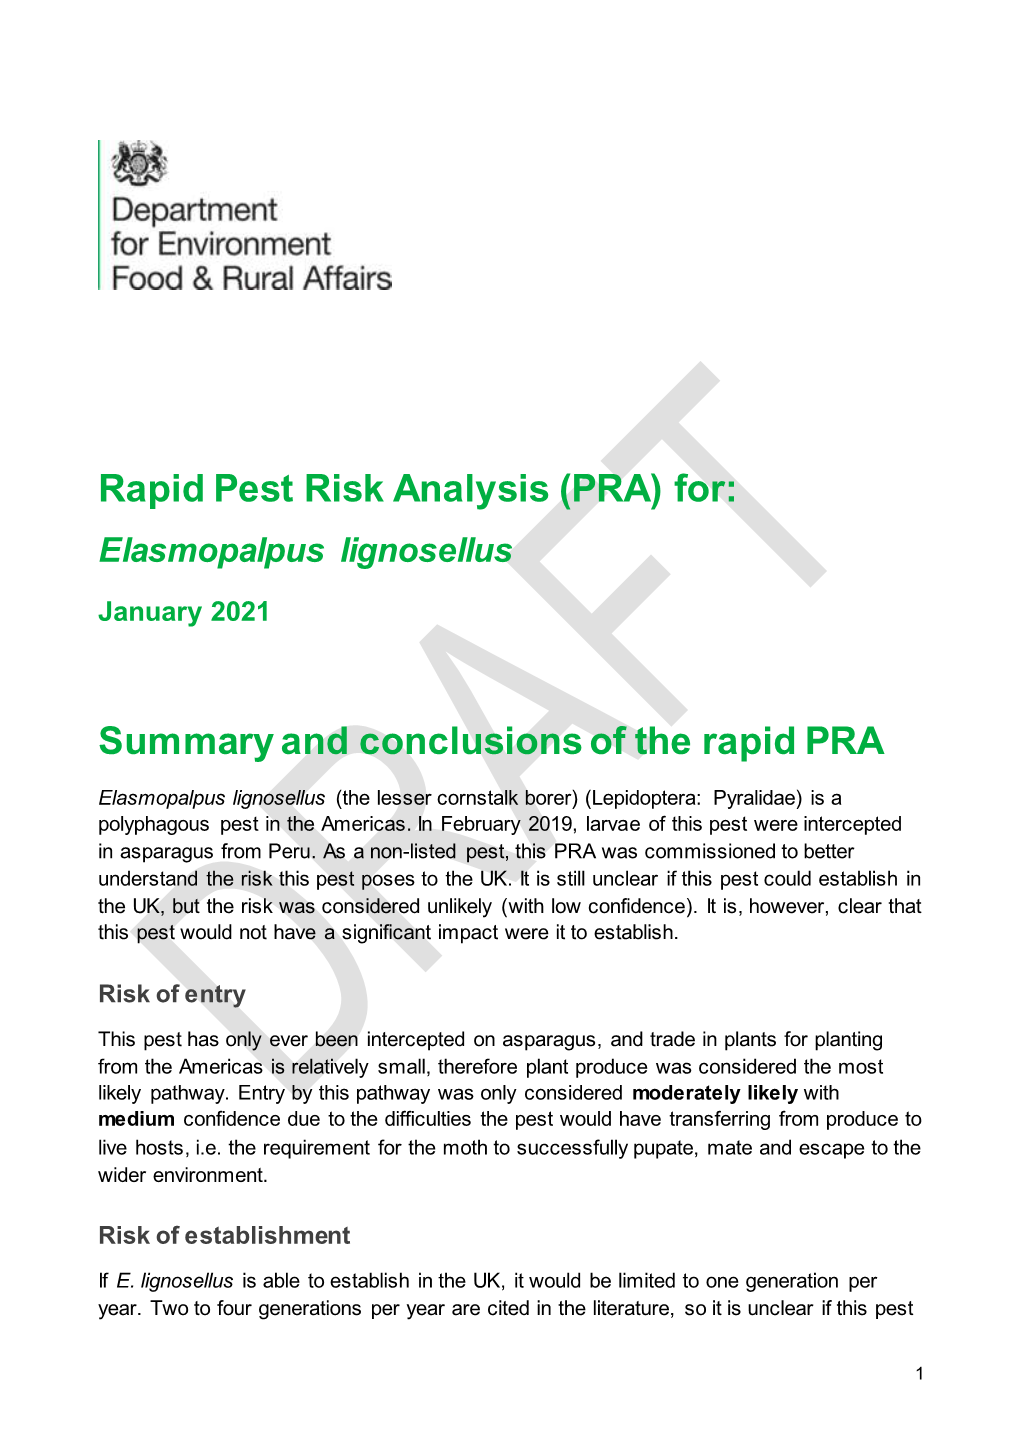 Rapid Pest Risk Analysis (PRA) For: Elasmopalpus Lignosellus